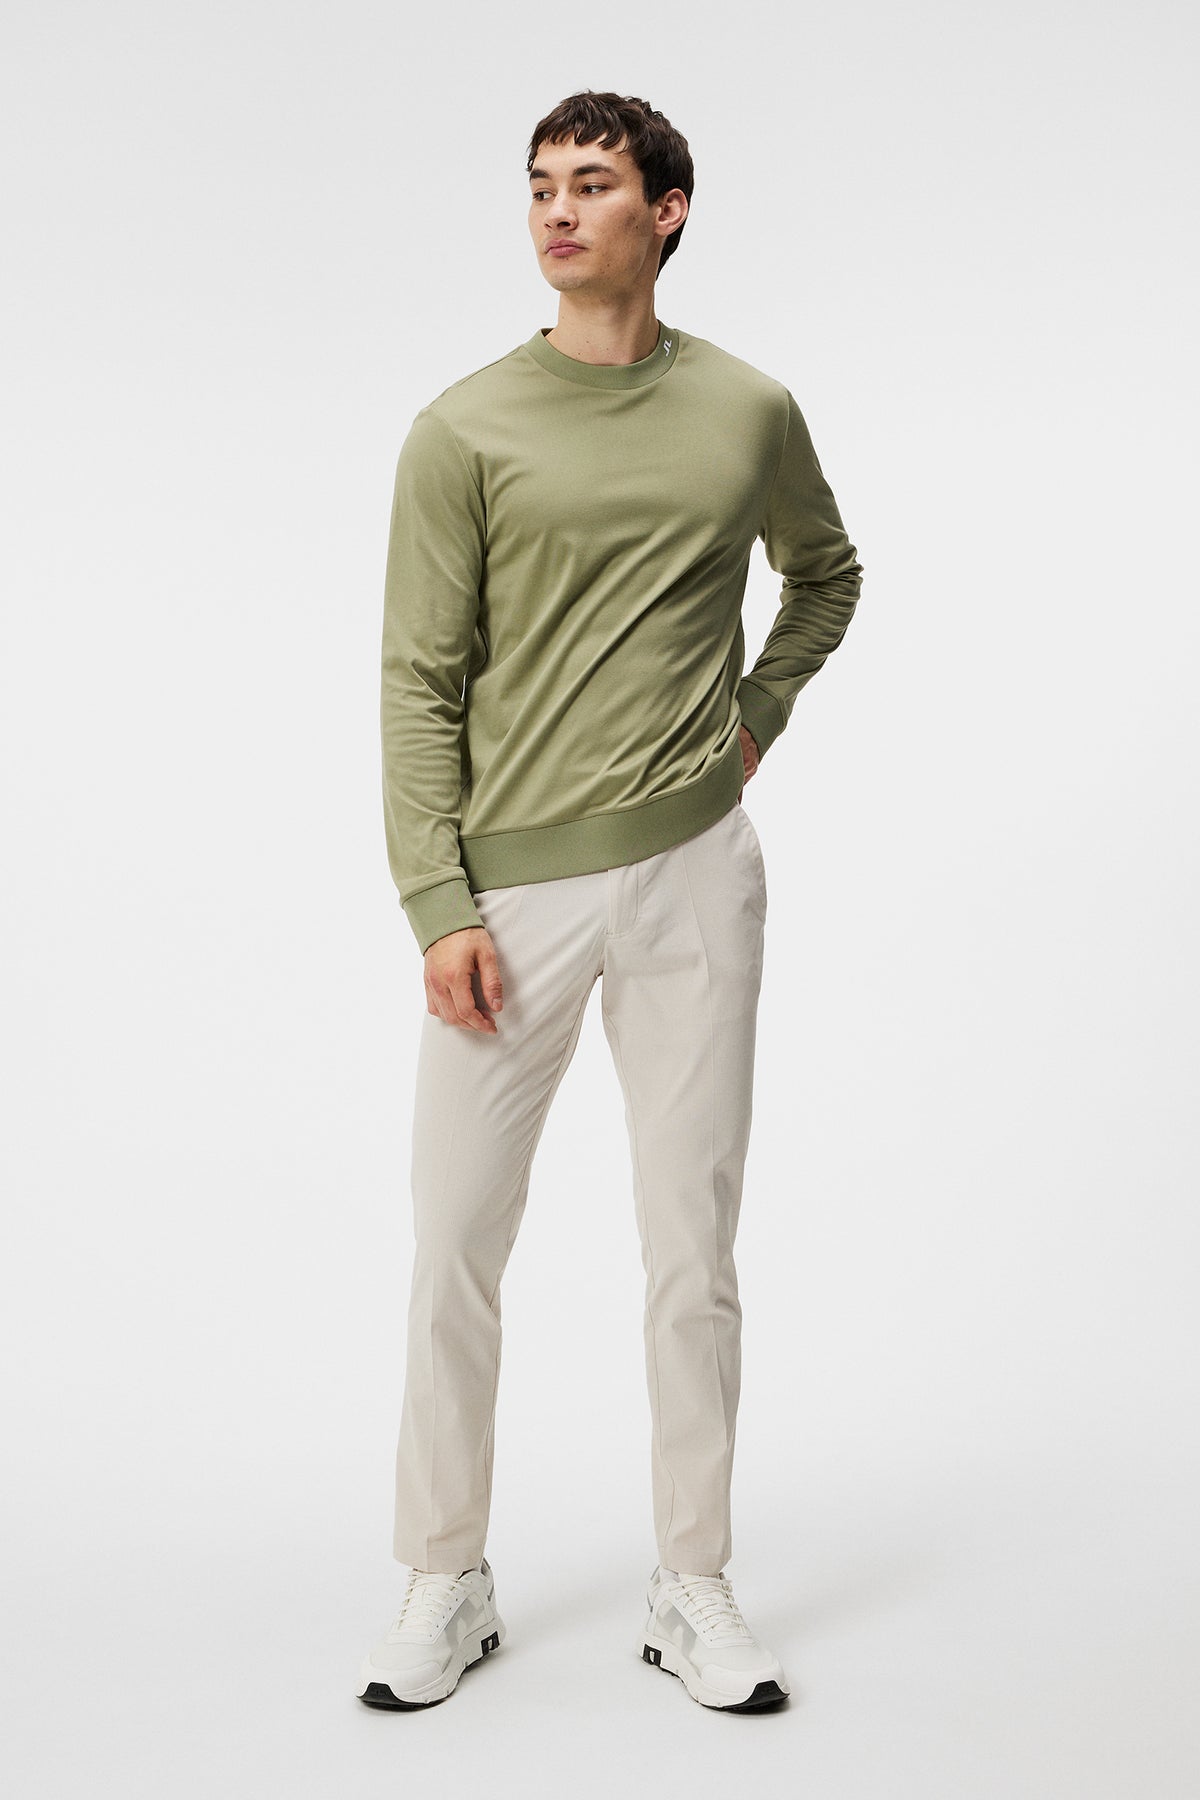 Jones Jersey Sweater / Oil Green